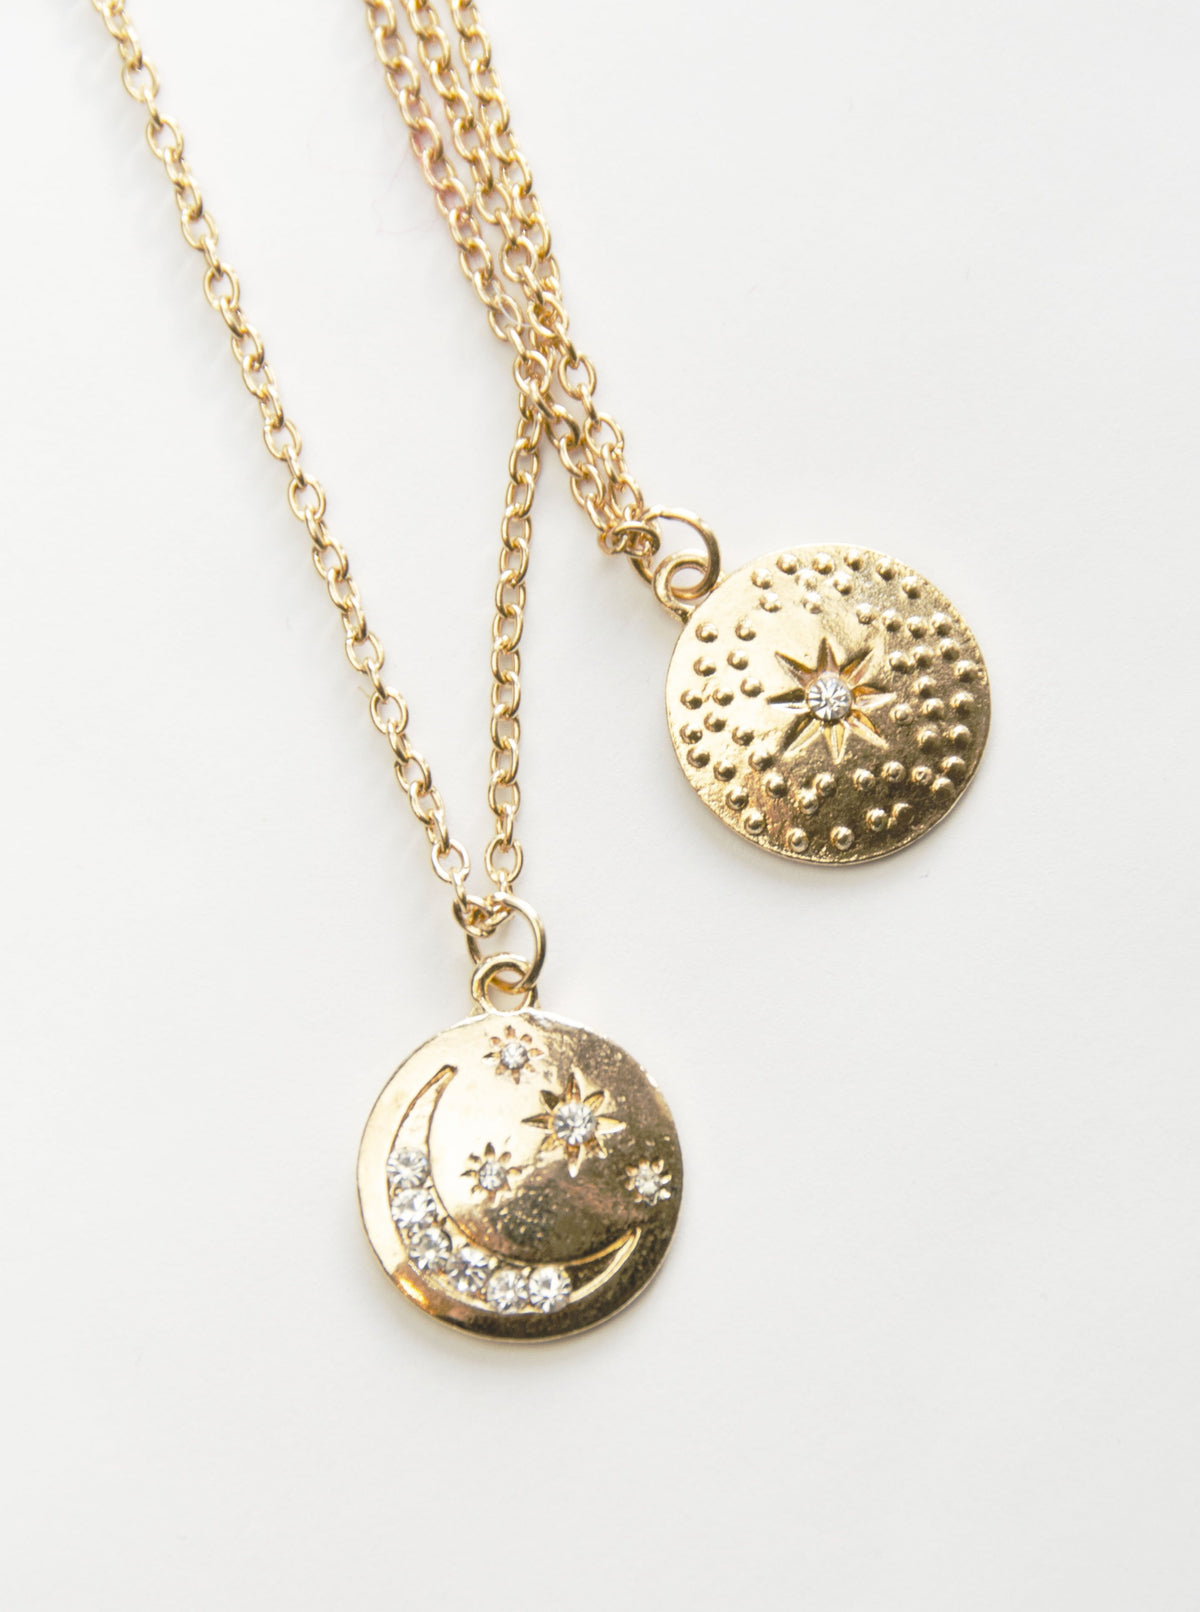 Wanderlust Earrings + Time Traveler Pendant Necklace Gift Set